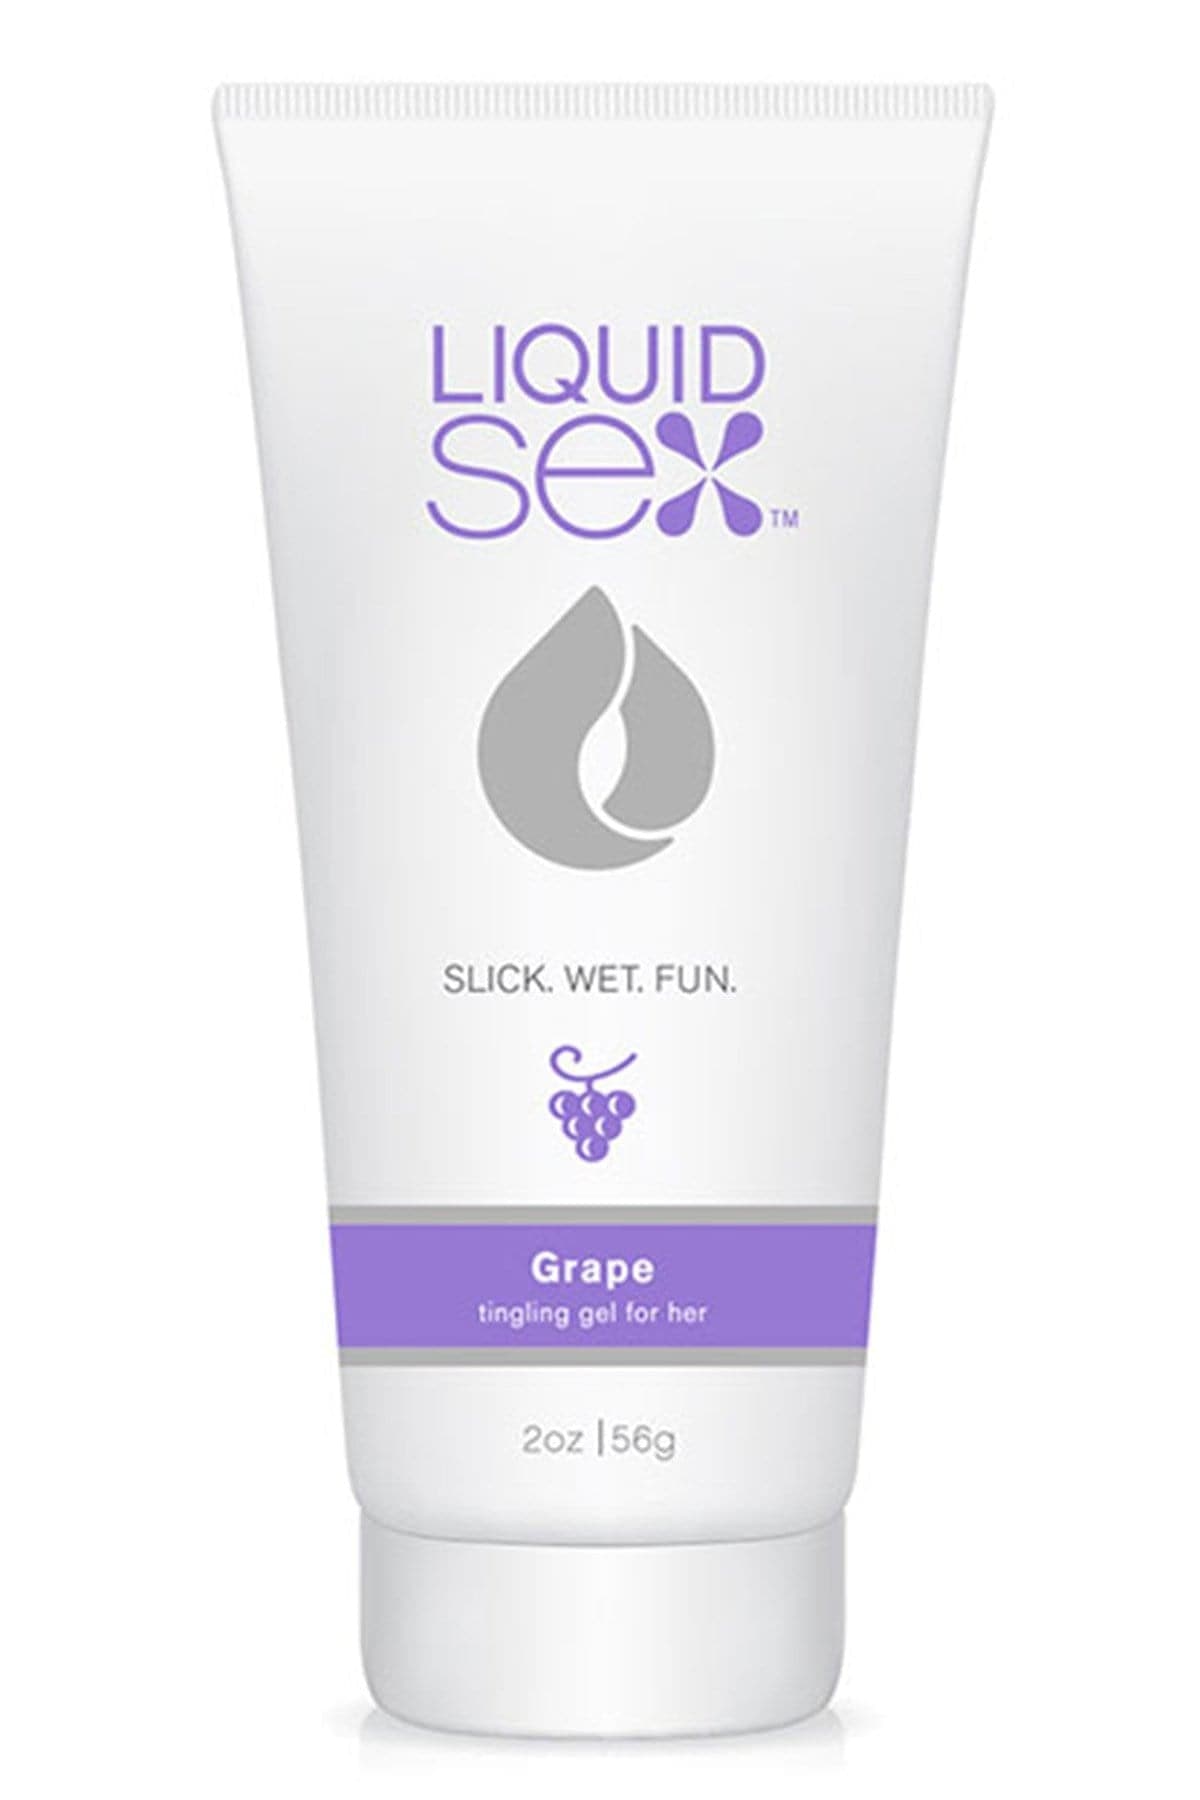 liquid sex tingling gel for her grape 2 fl oz